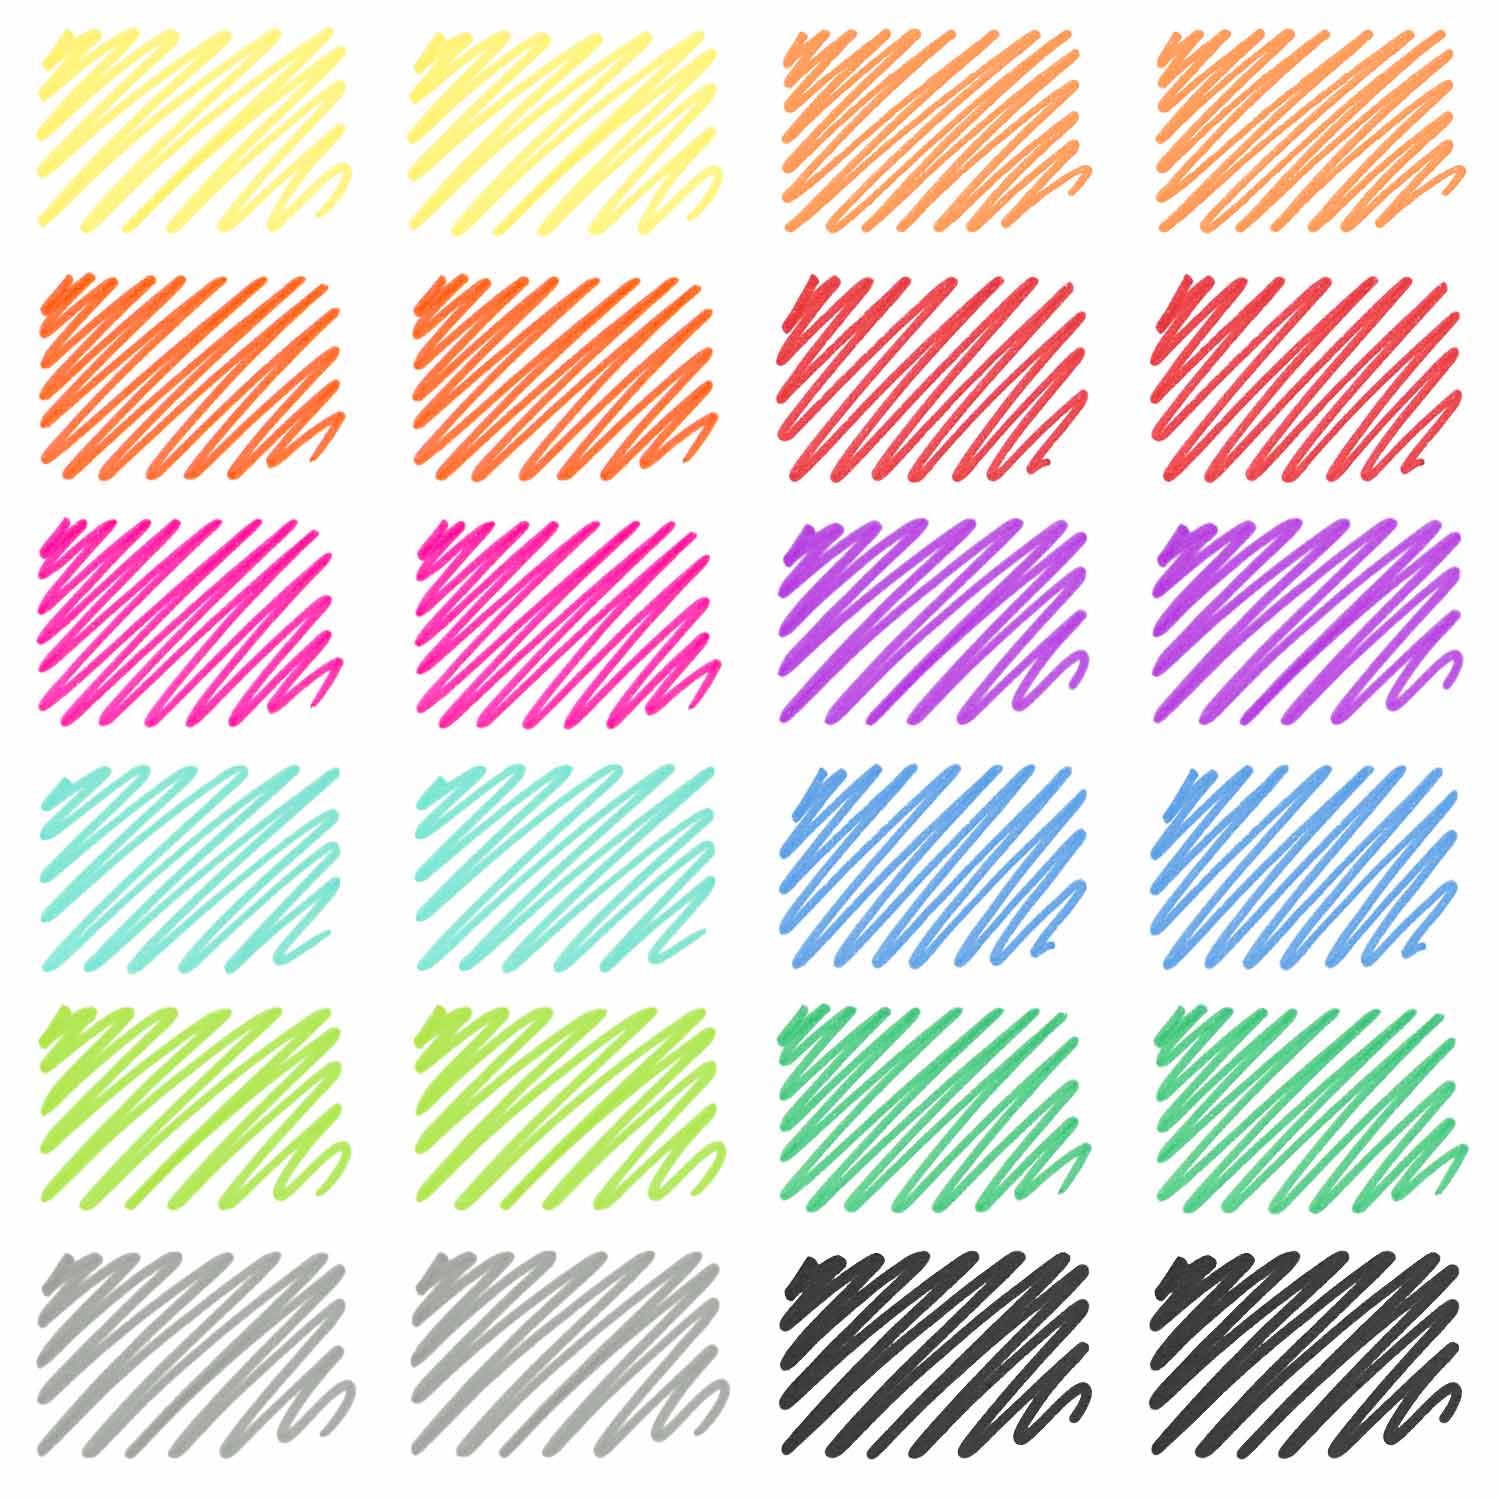 https://arteza.com/cdn/shop/products/felt-pens-rainbow-set-of-24_FEujuzGt.jpg?v=1652894741&width=1946